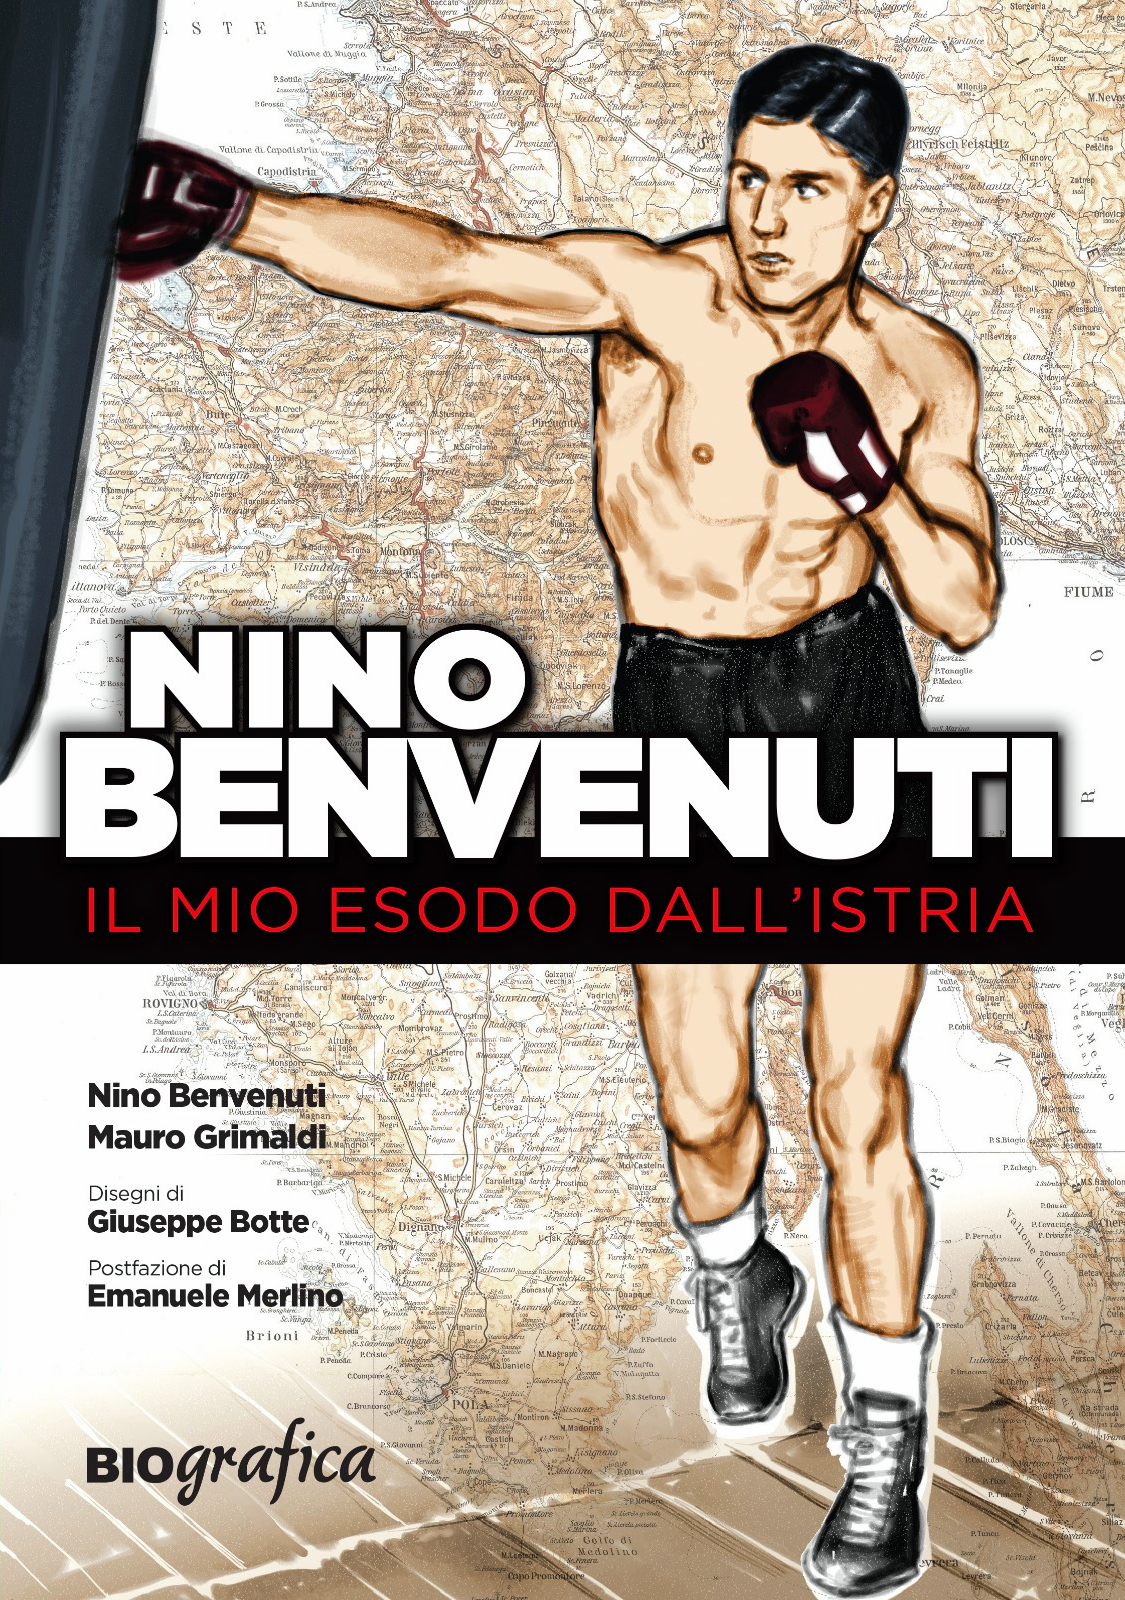 Nino Benvenuti diventa un fumetto per raccontare il dramma del suo esodo dall'Istria 